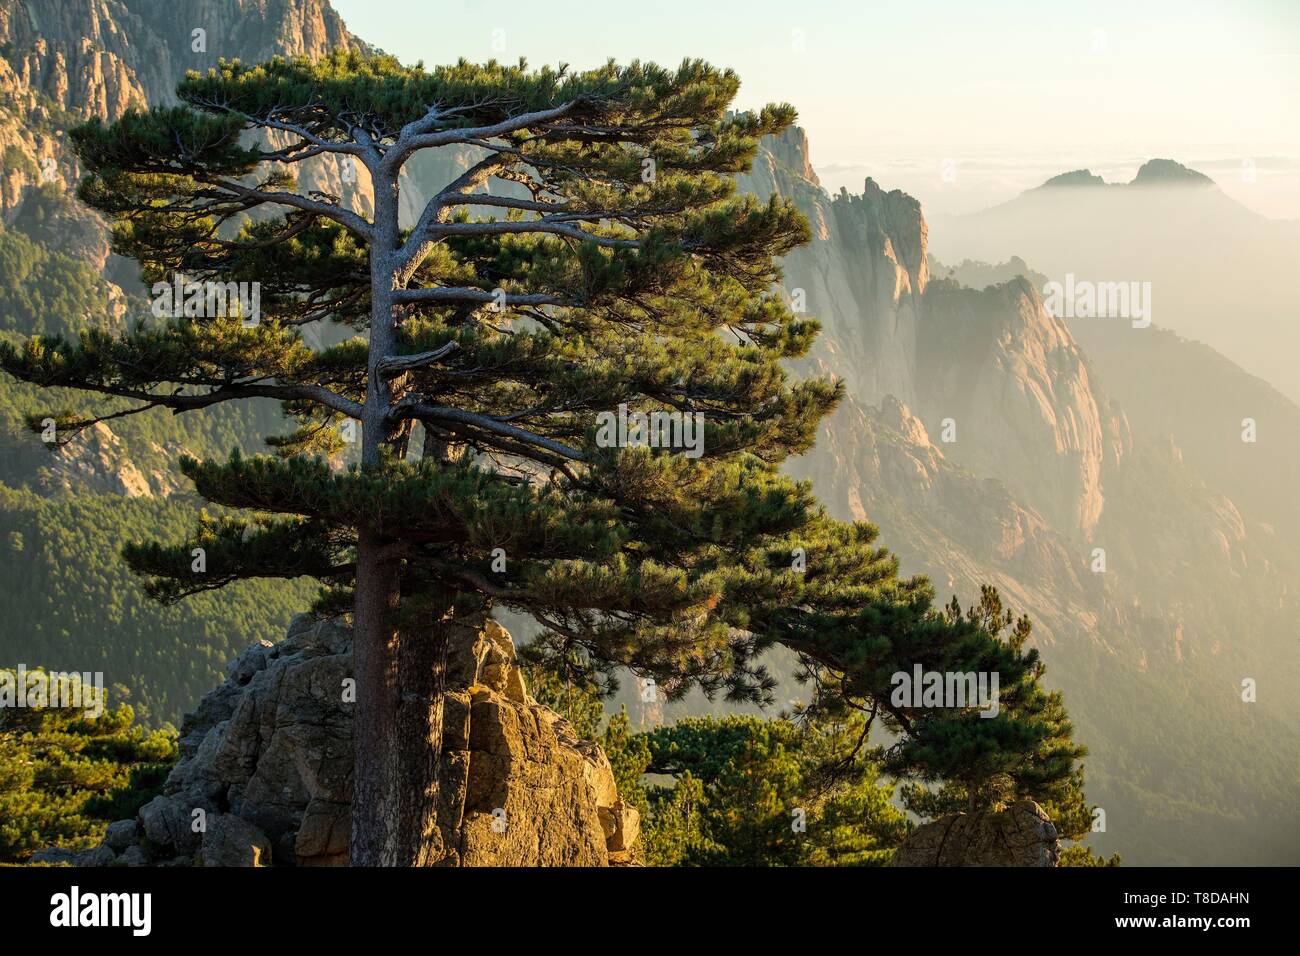 France, Corse du Sud, Quenza, Needles of Bavella from the Col de Bavella, Laricio de Corsica pine (Pinus nigra corsicana) Stock Photo